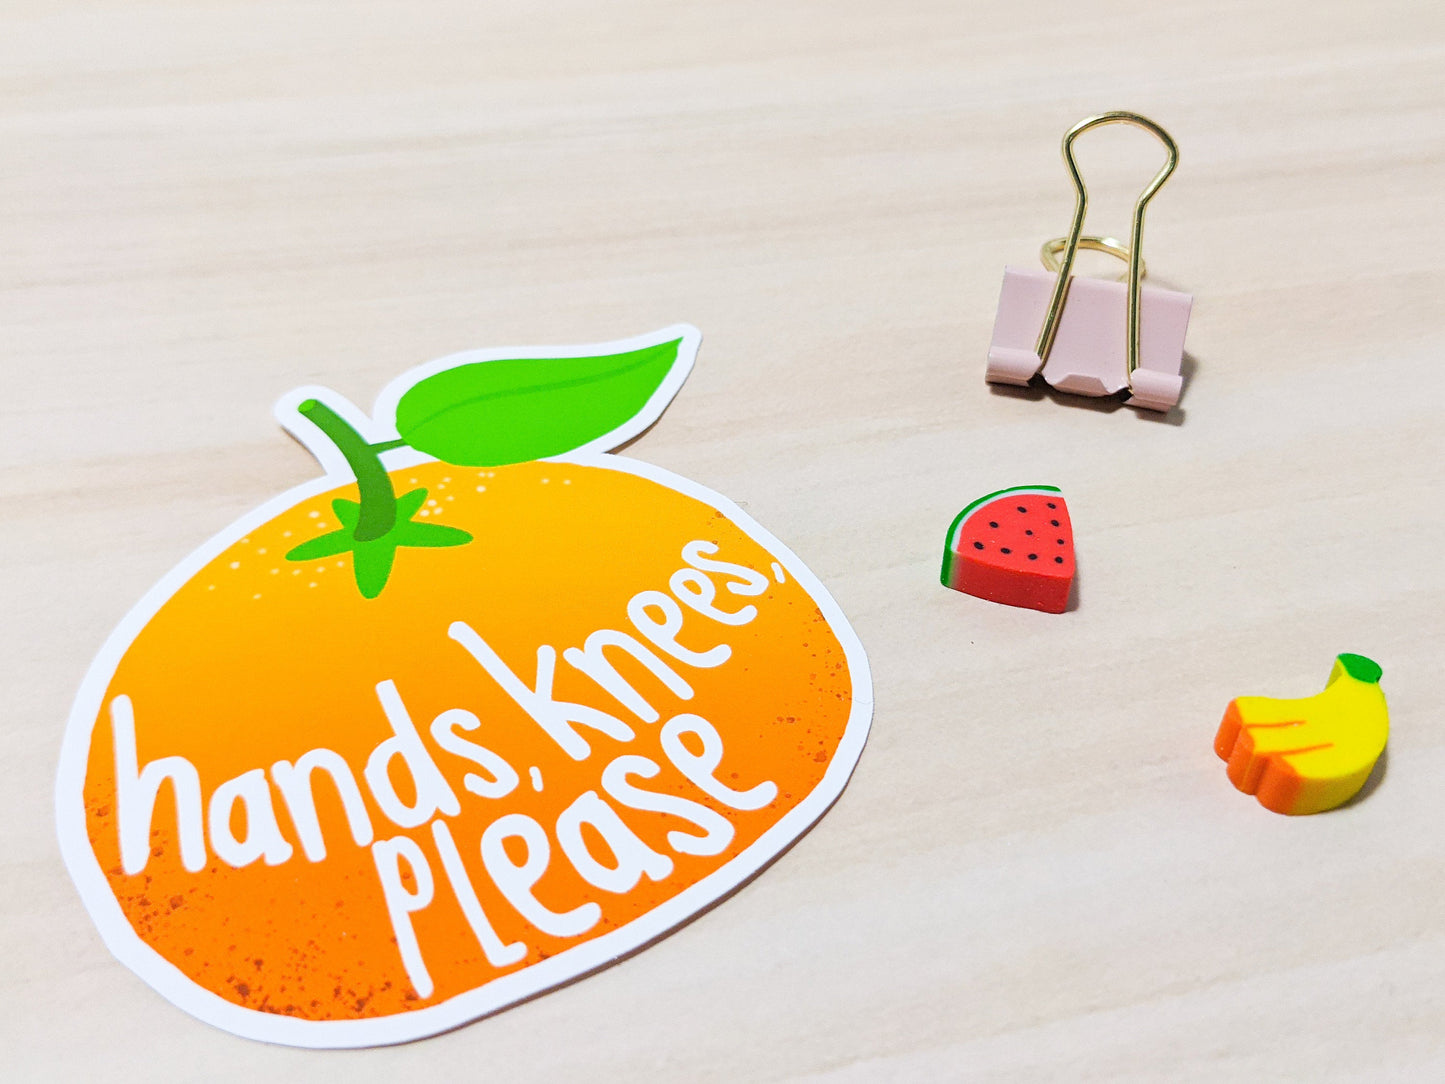 Hands, Knees, Please Tangerine Lyric Sticker